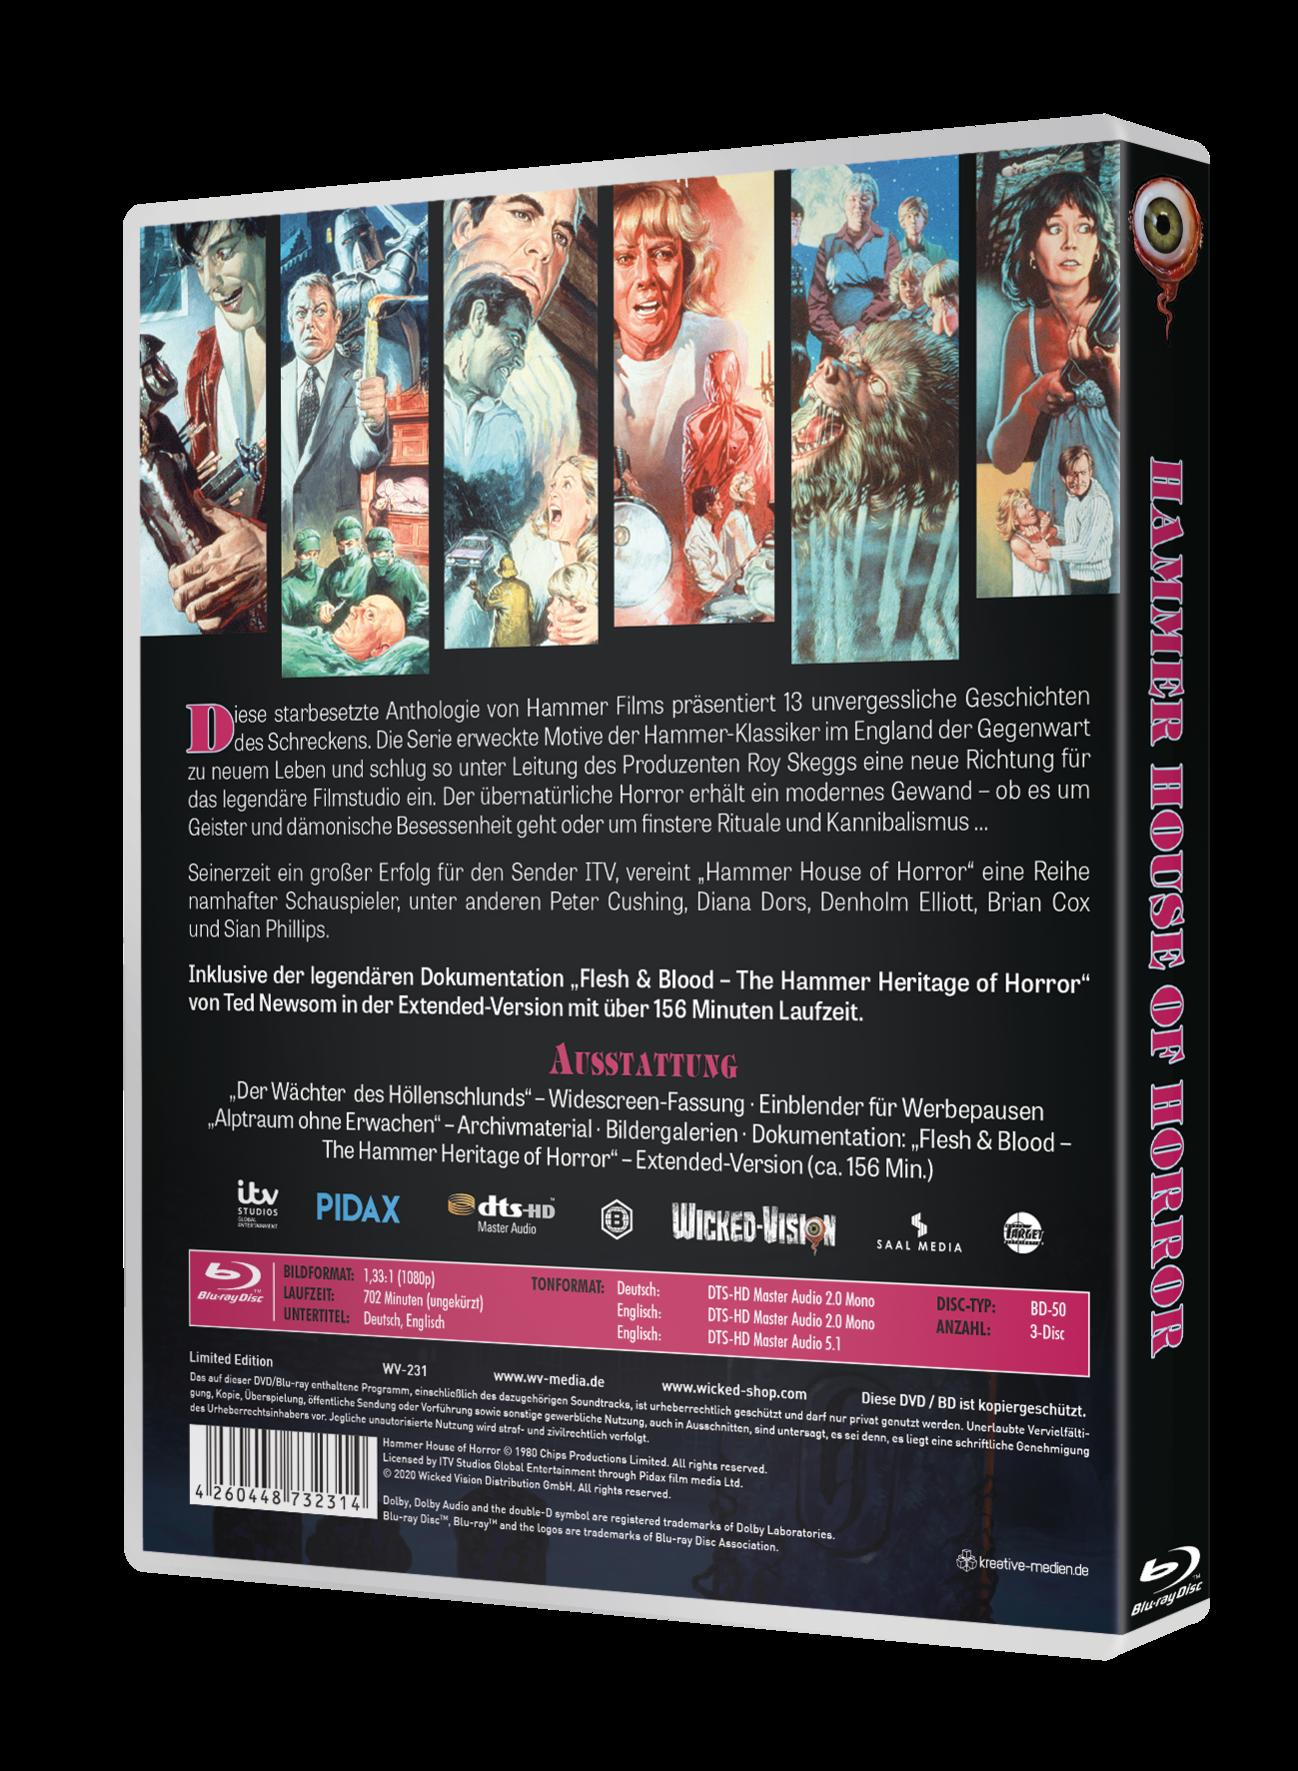 Hammer House komplett of Horror Blu-ray